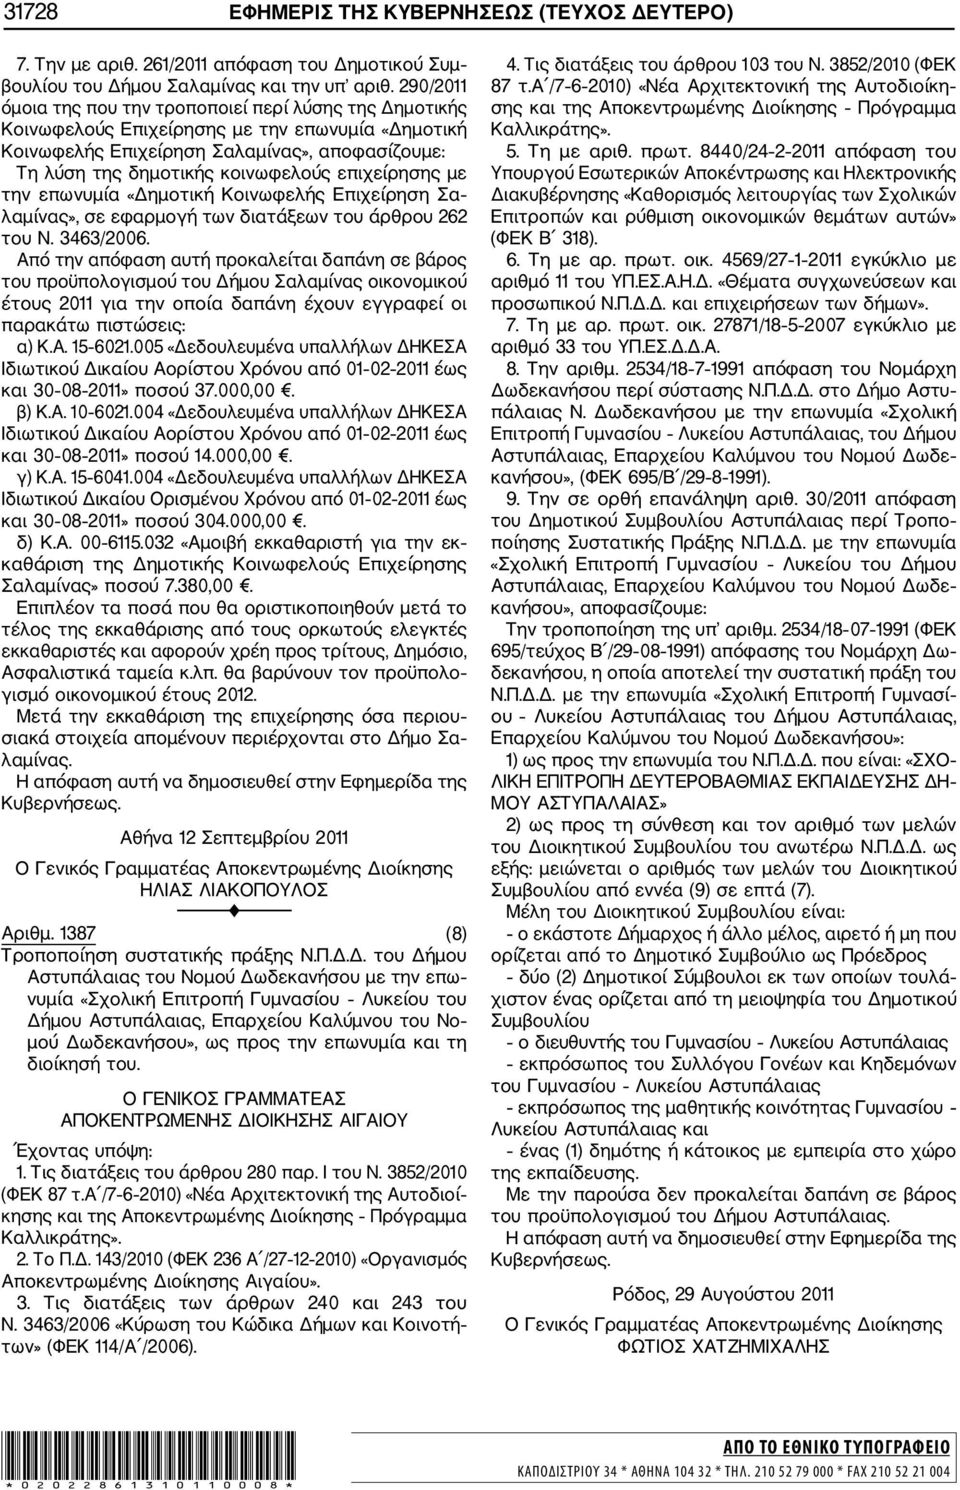 επιχείρησης με την επωνυμία «Δημοτική Κοινωφελής Επιχείρηση Σα λαμίνας», σε εφαρμογή των διατάξεων του άρθρου 262 του Ν. 3463/2006.